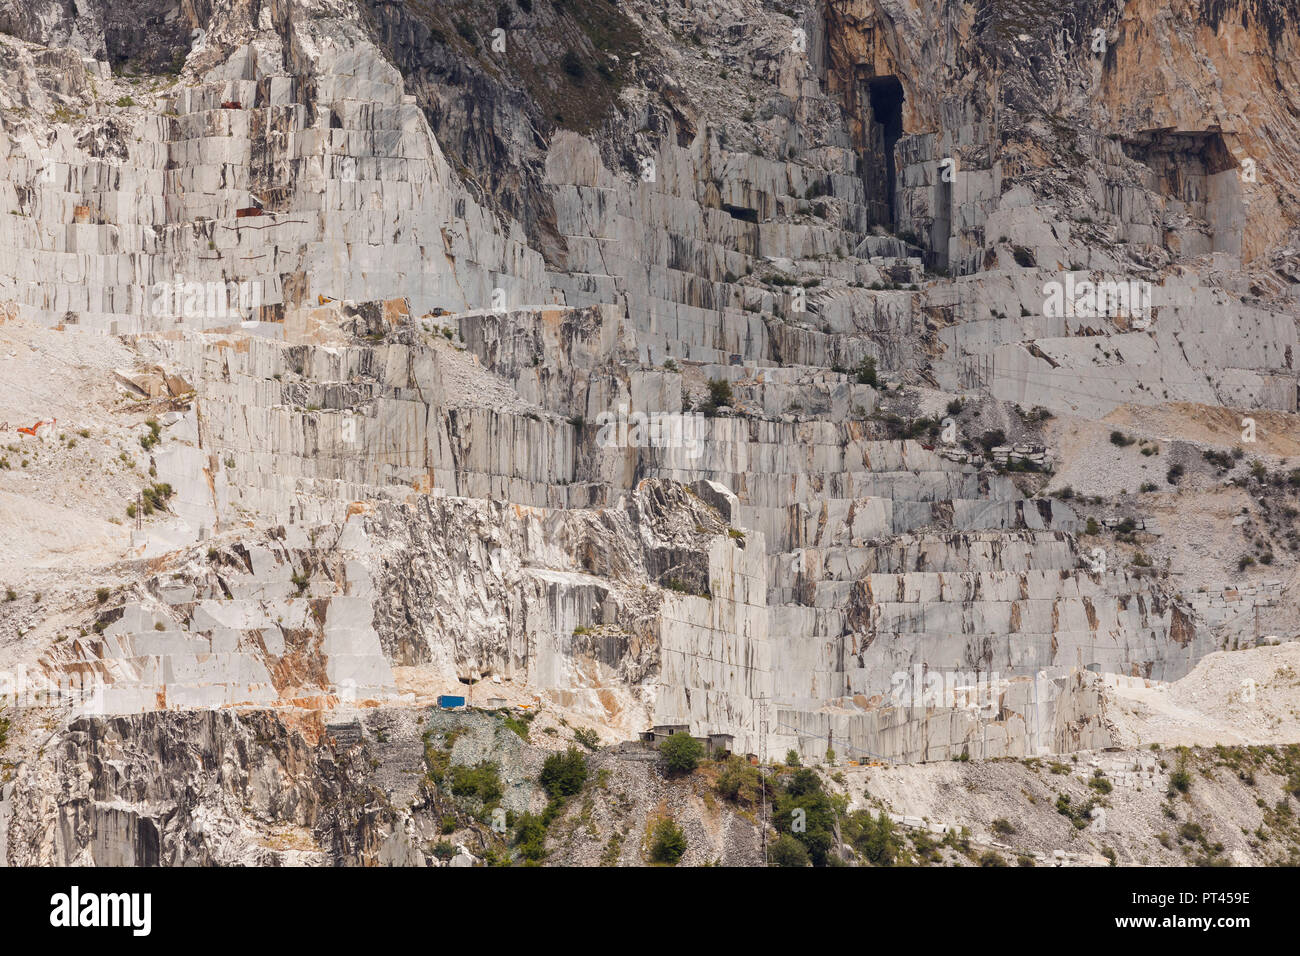 Cava di marmo, comune di Carrara, Massa Carrara provincia, Toscana, Italia, Europa occidentale Foto Stock